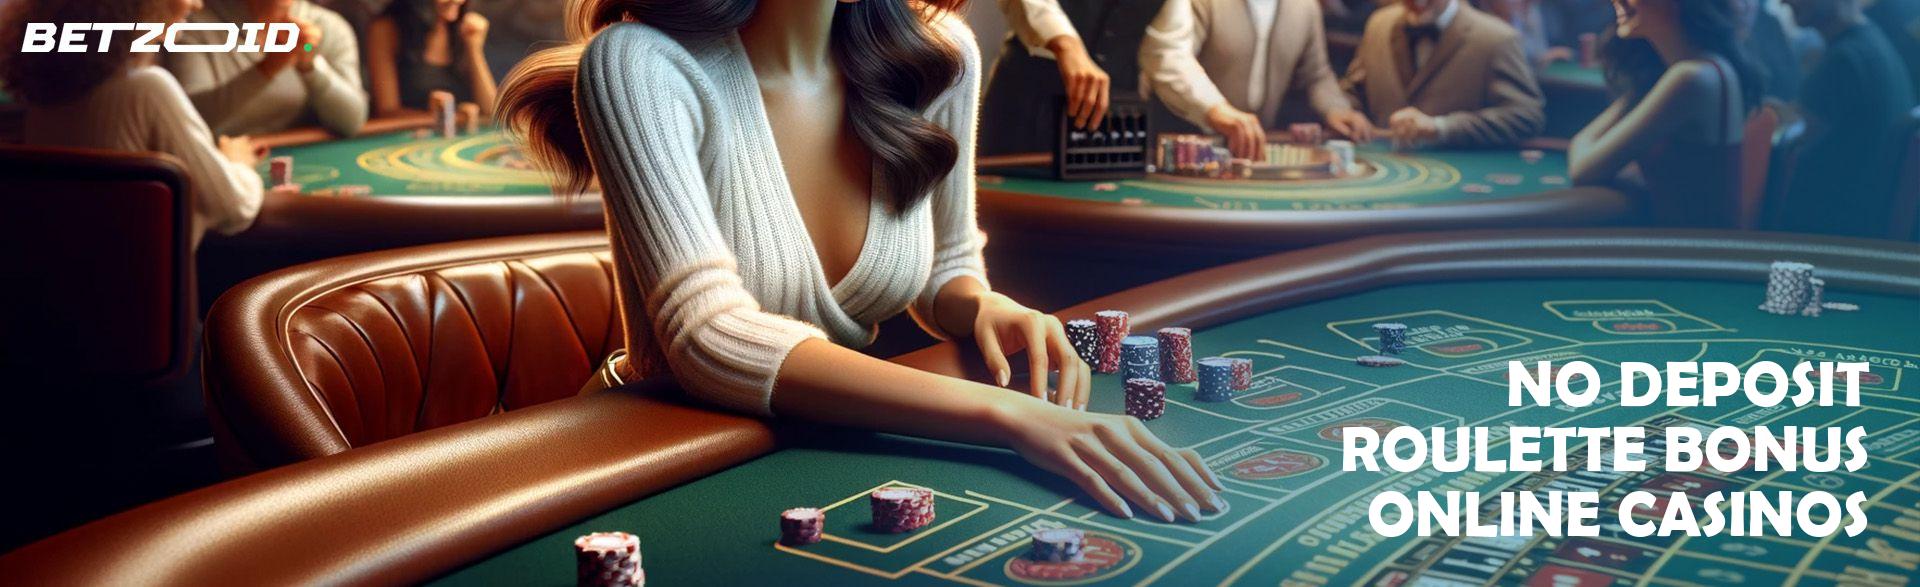 No Deposit Roulette Bonus Online Casinos.